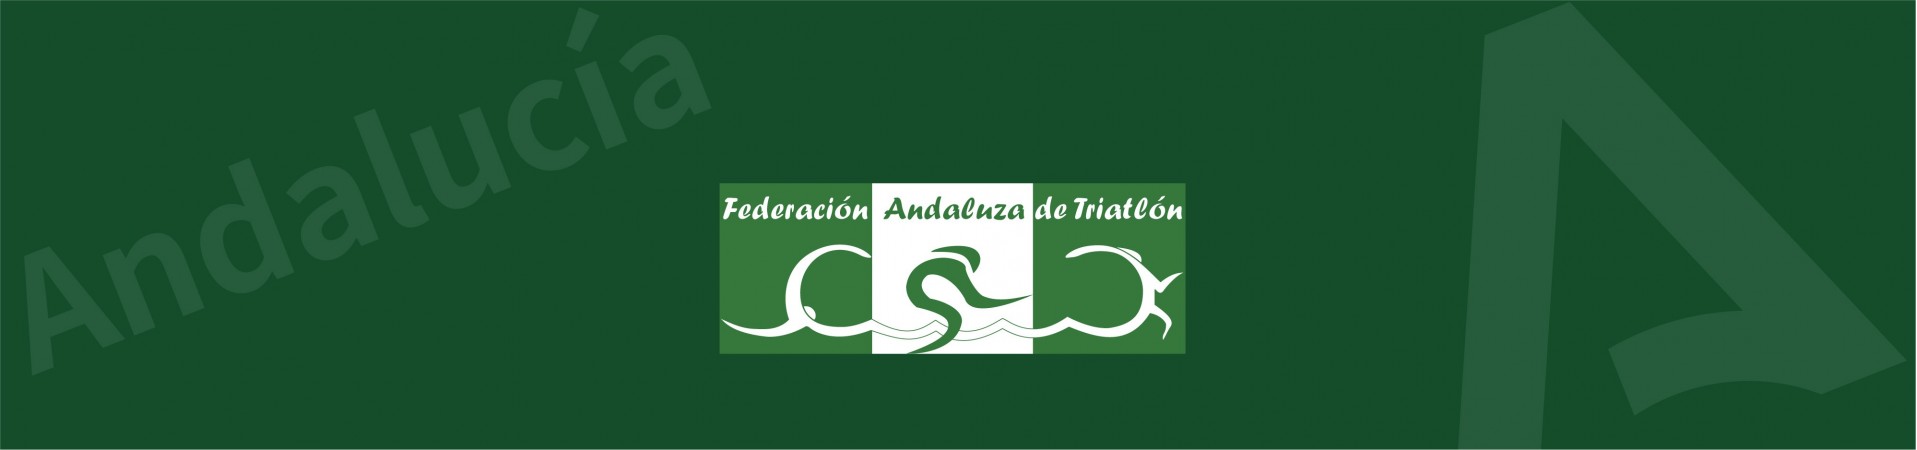 FEDERACIÓN ANDALUZA DE TRIATLÓN (ATLETAS)